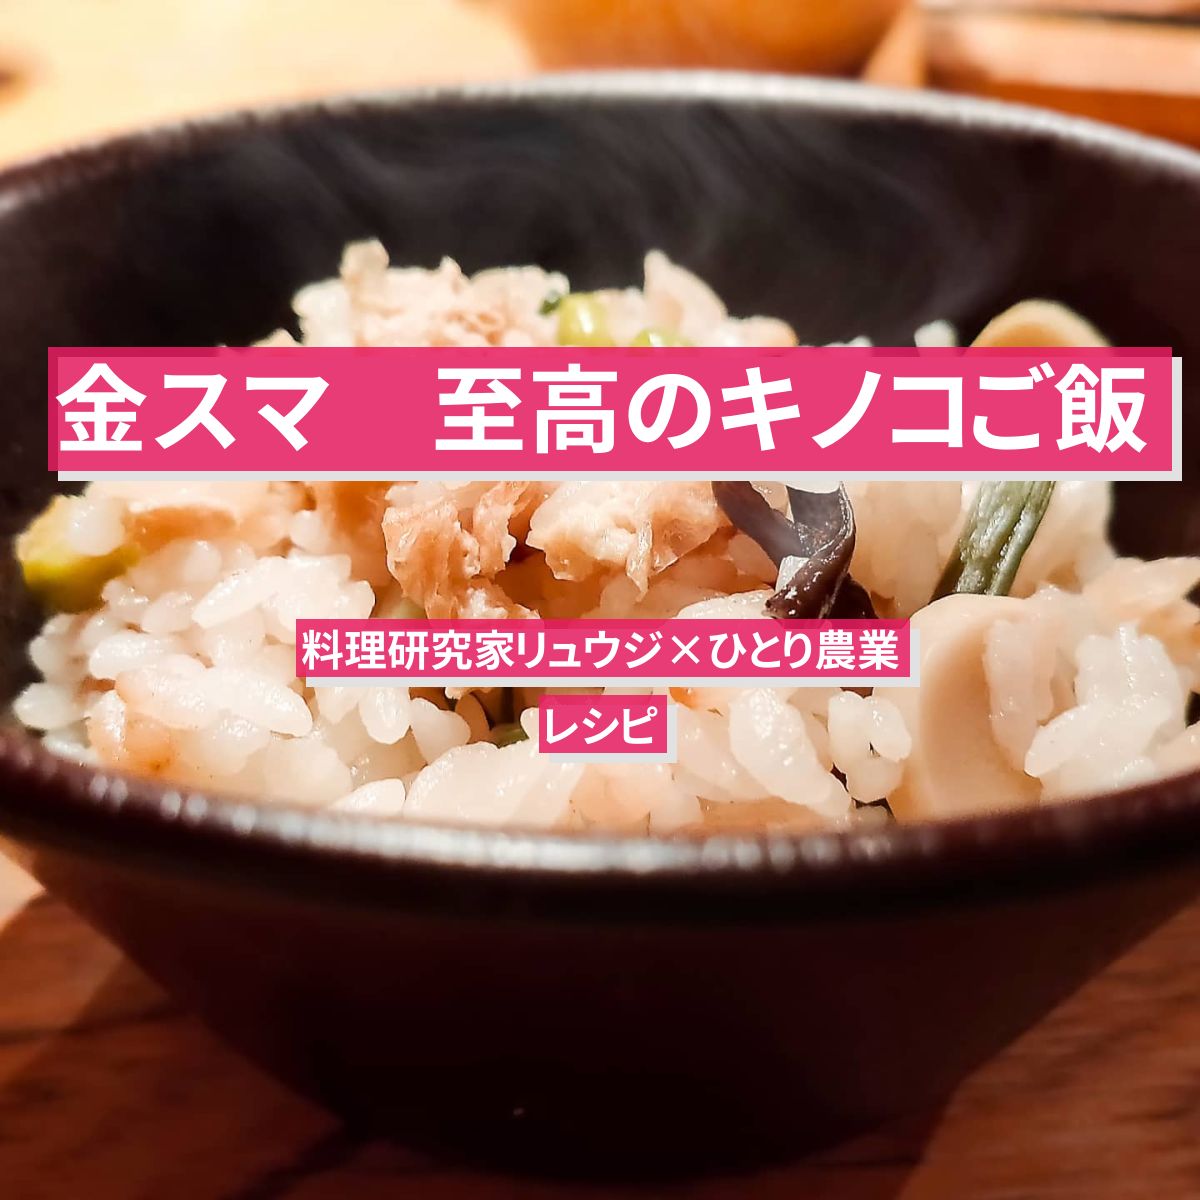 【金スマ】『至高のキノコご飯』リュウジのレシピ